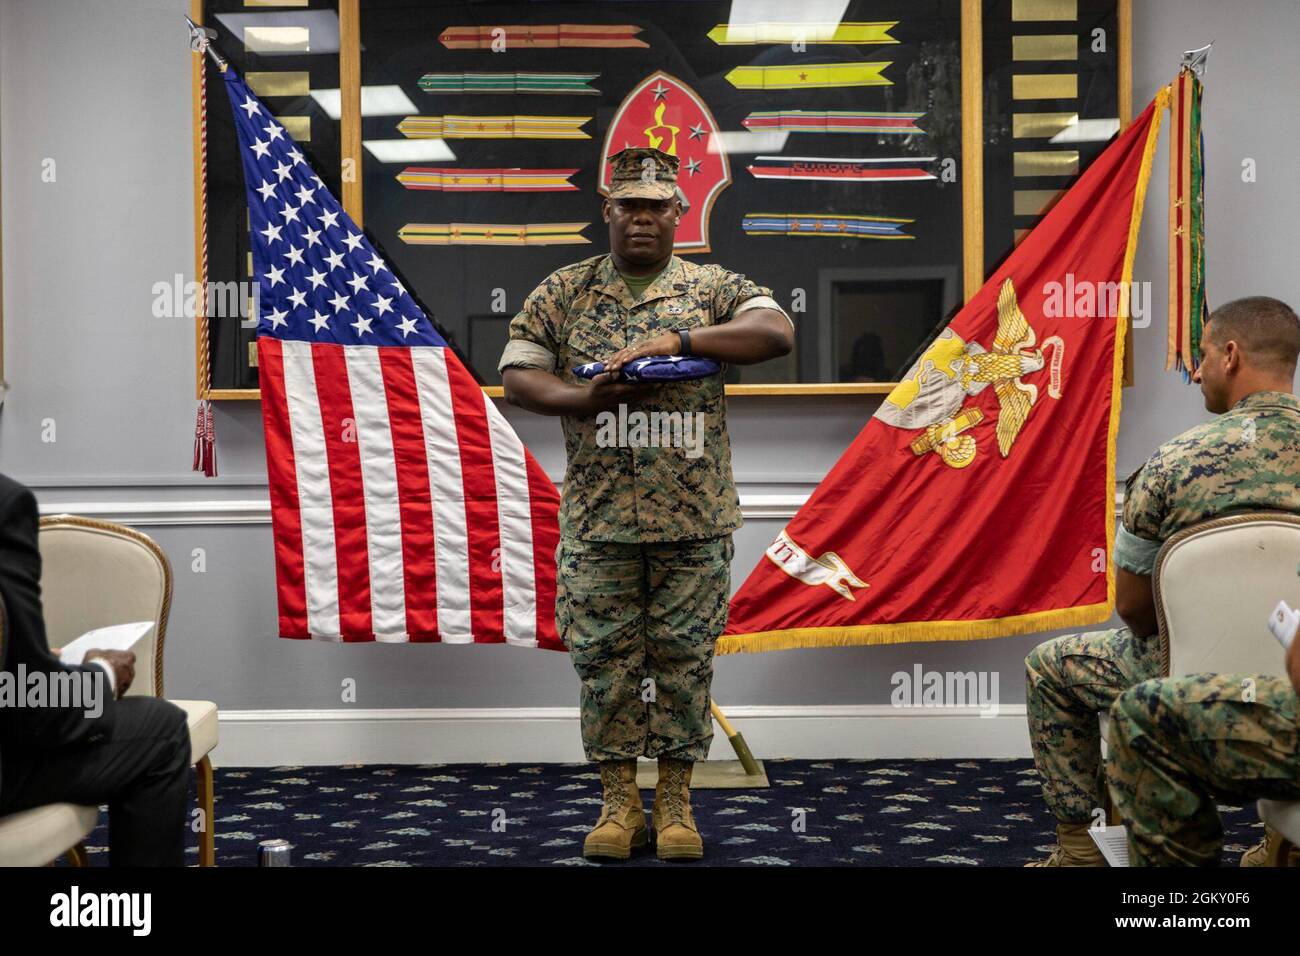 Gunnery Sgt. Anthony Brown, nativo di Houston e ex capo della mobilità della 22a Marine Expeditionary Unit, si erge con “Old Glory” durante la sua cerimonia di pensionamento a bordo del Marine Corps base Camp Lejeune, 22 luglio 2021. Brown si ritirò dopo 20 anni di servizio attivo. Foto Stock